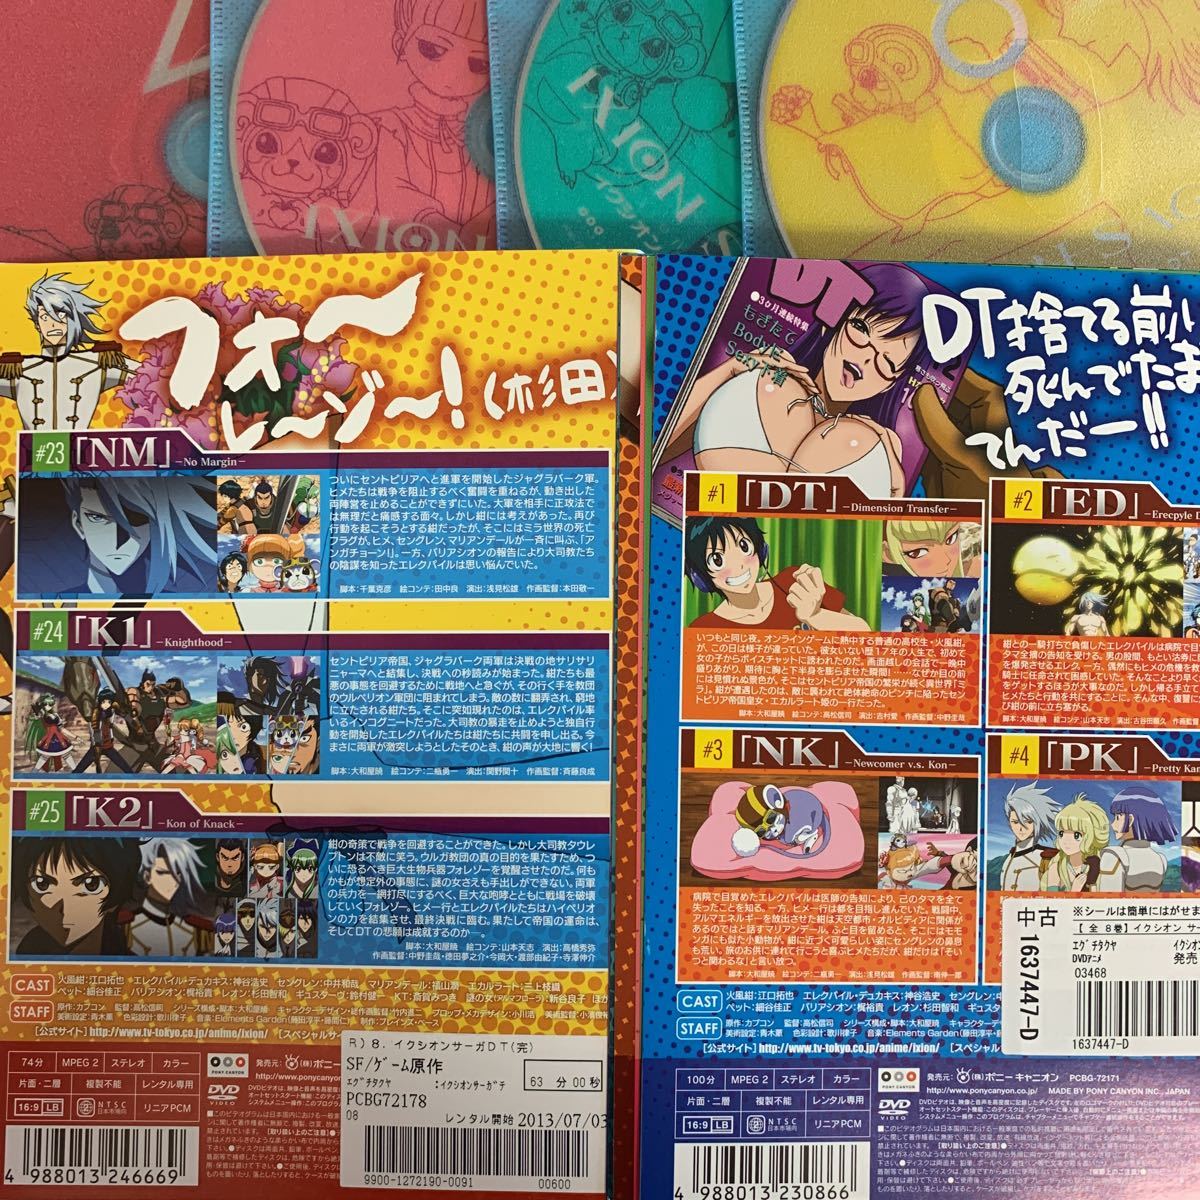 イクシオンサーガ DT 全8巻 レンタル版DVD_画像2